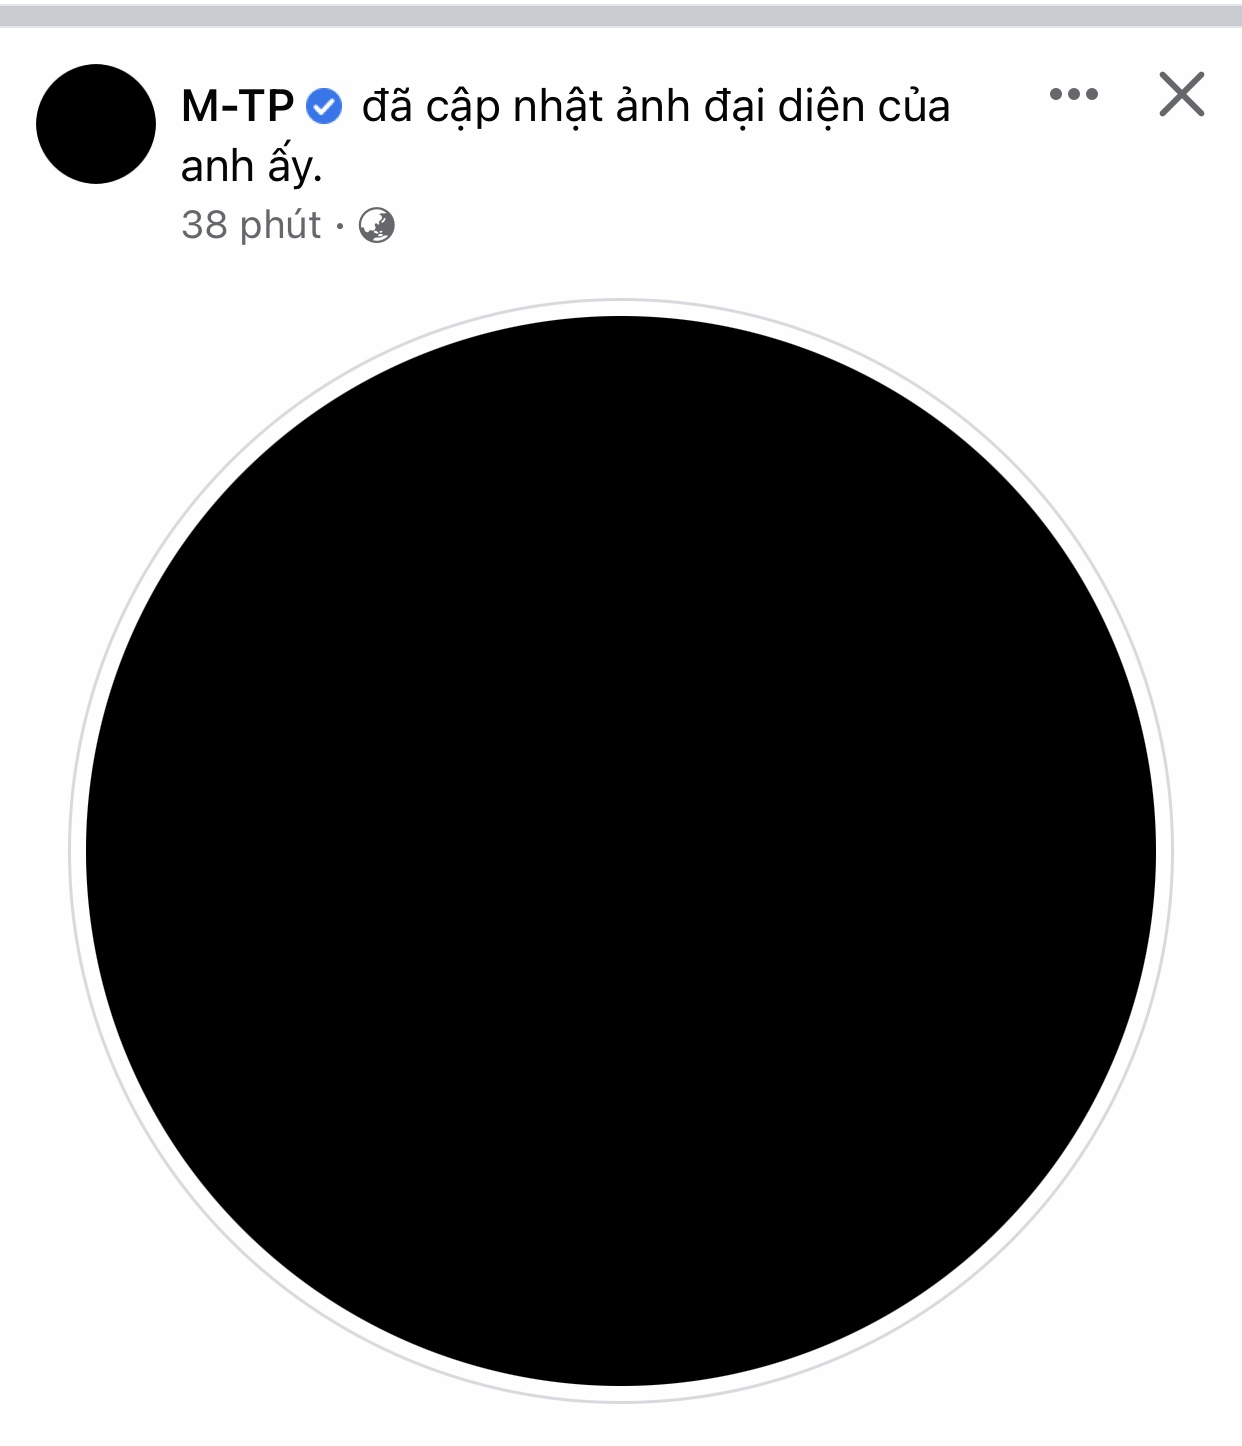 Sơn Tùng đặt avatar đen: 2 nam ca sĩ chia buồn, netizen hoang mang